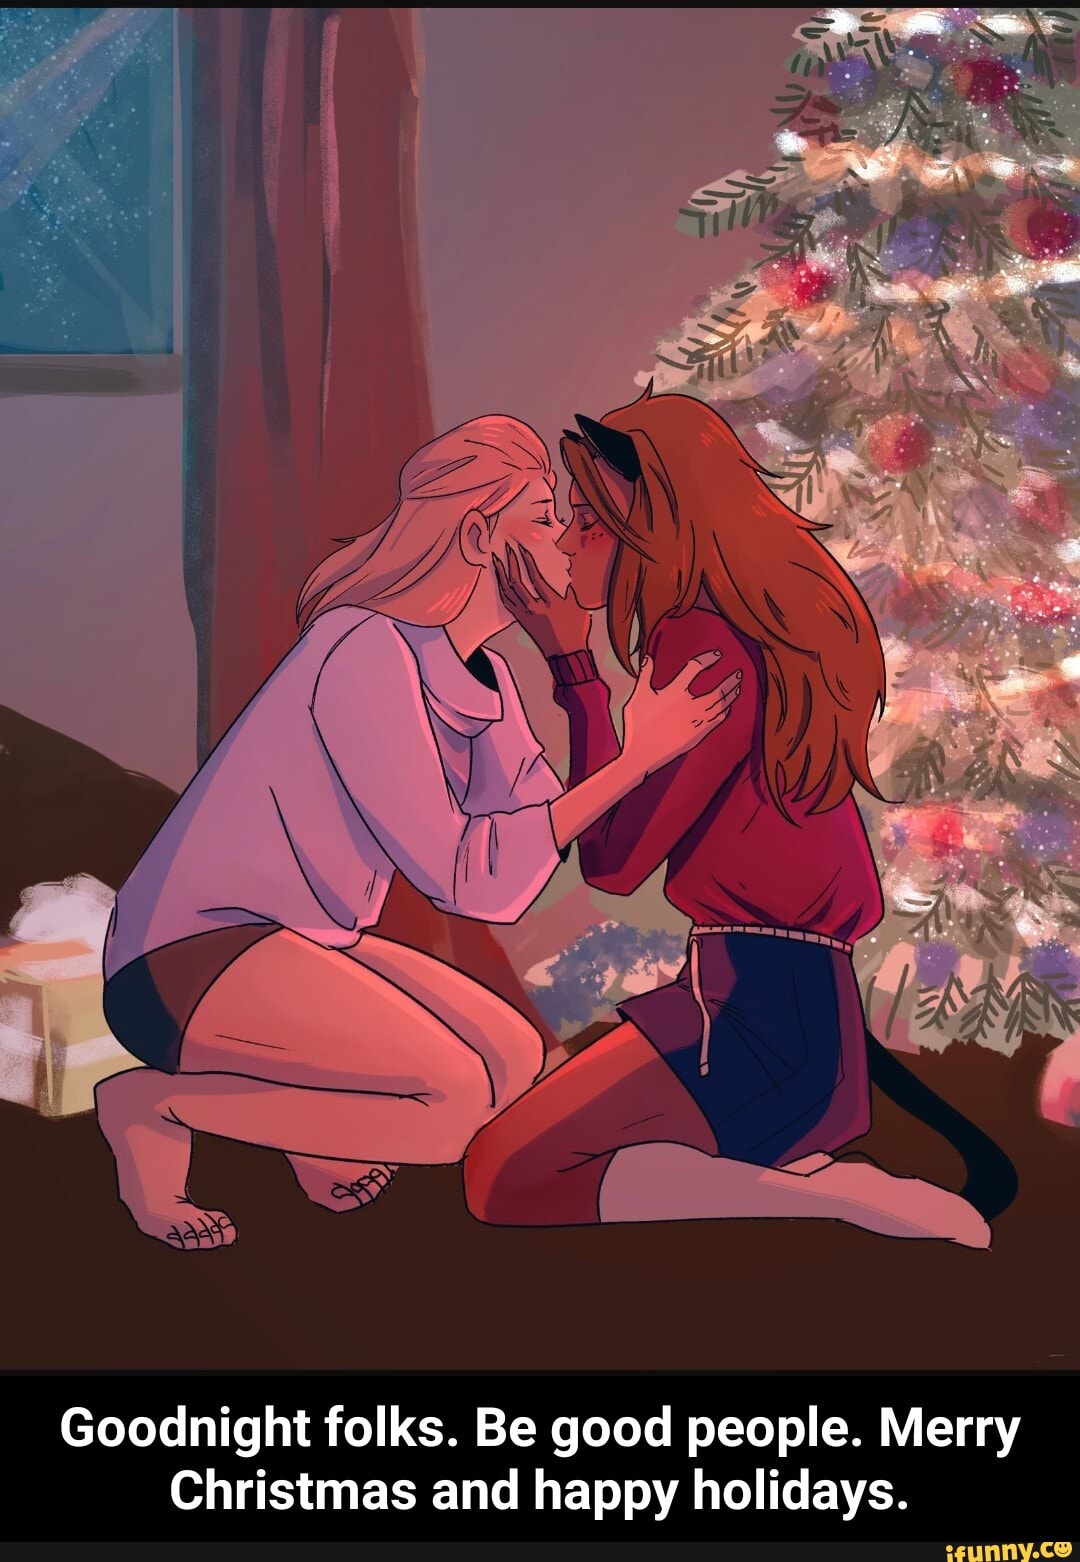 Лесбиянки на Рождество